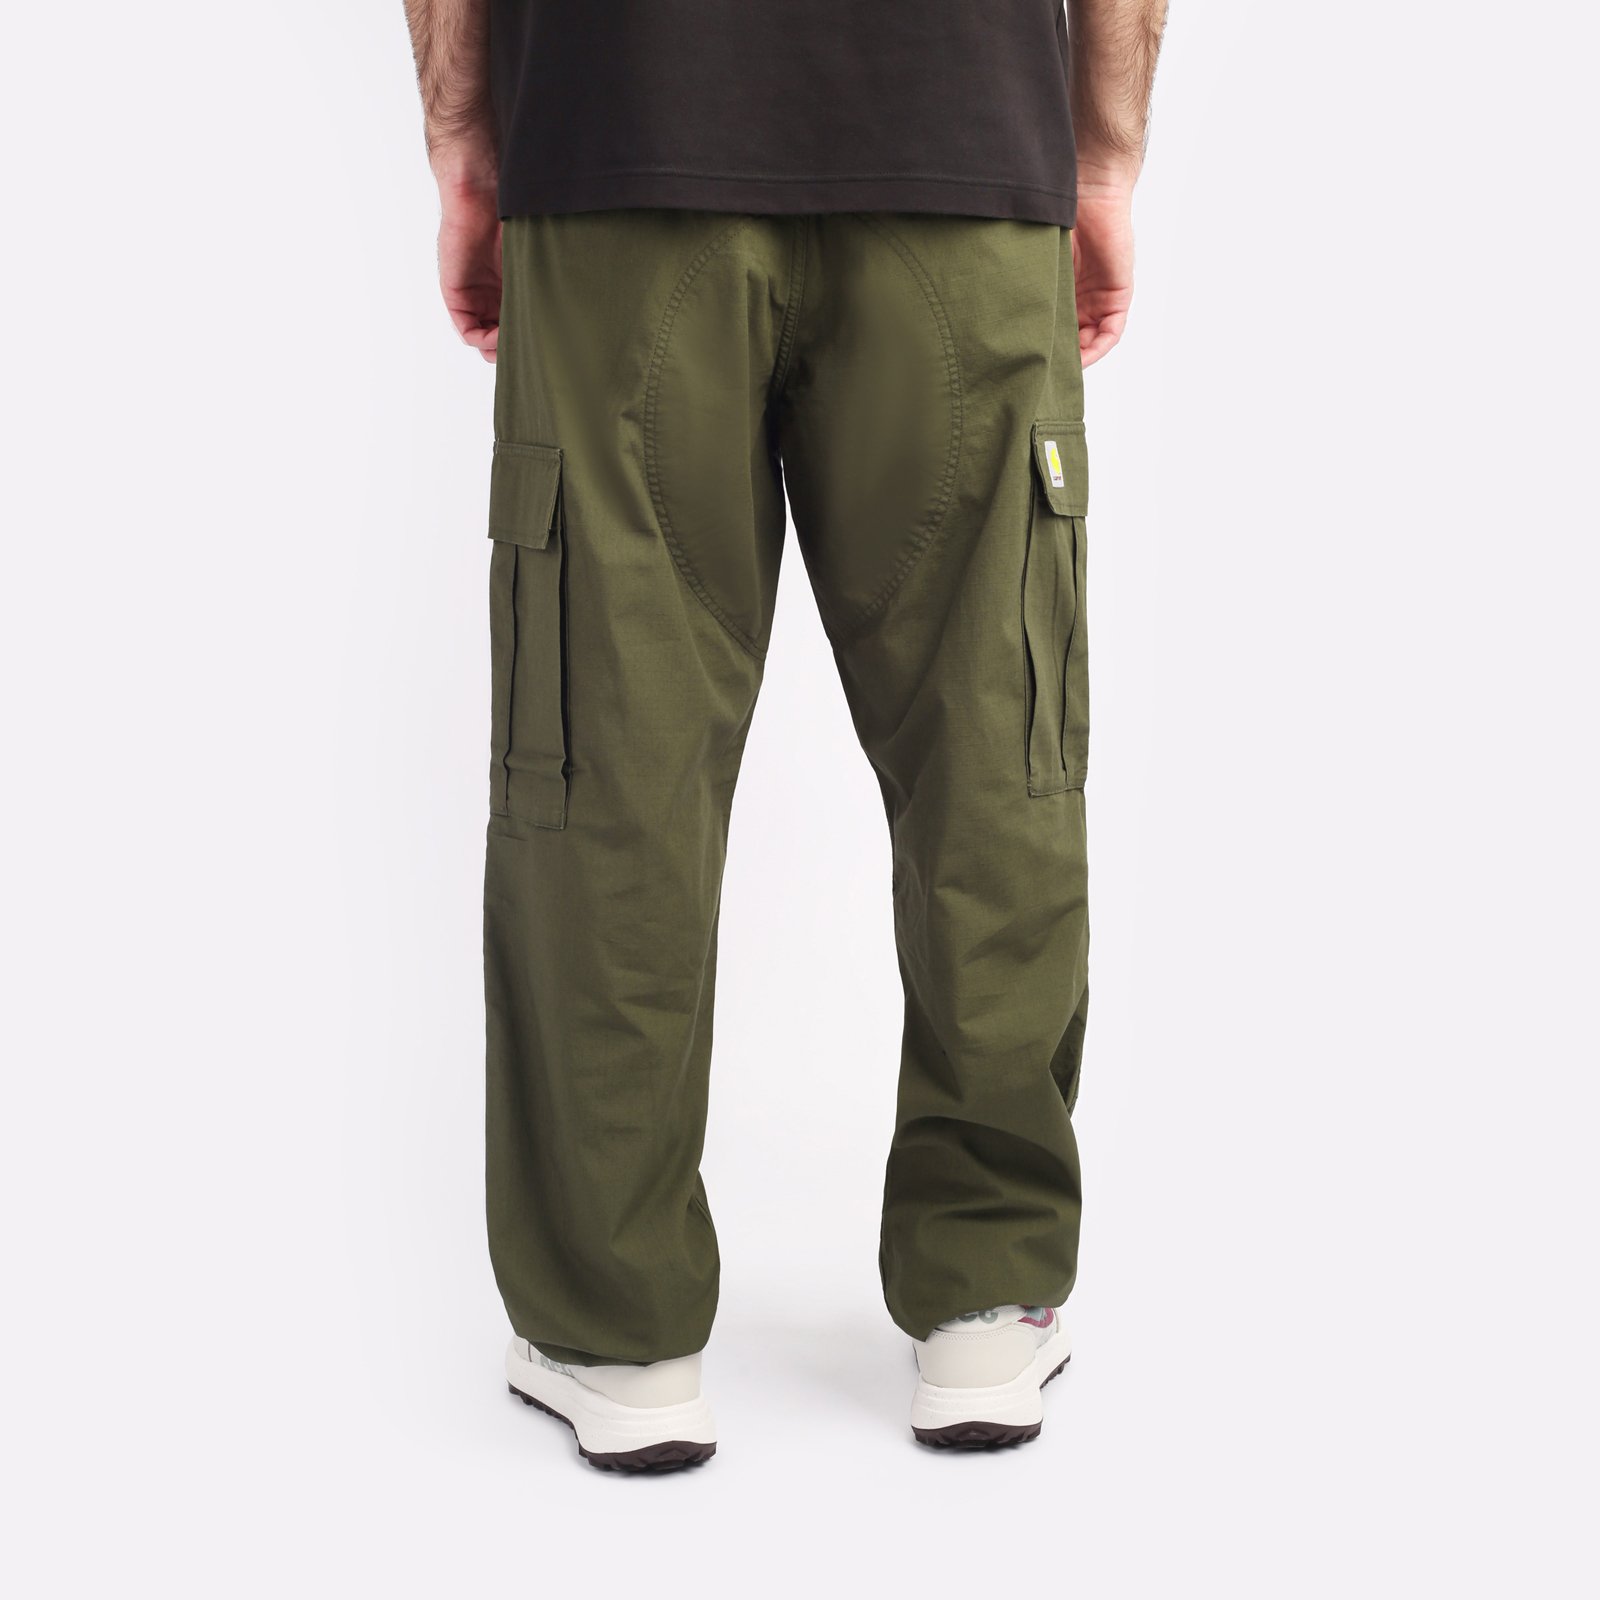 мужские брюки Carhartt WIP Regular Cargo Pant  (I032467-cypress)  - цена, описание, фото 2